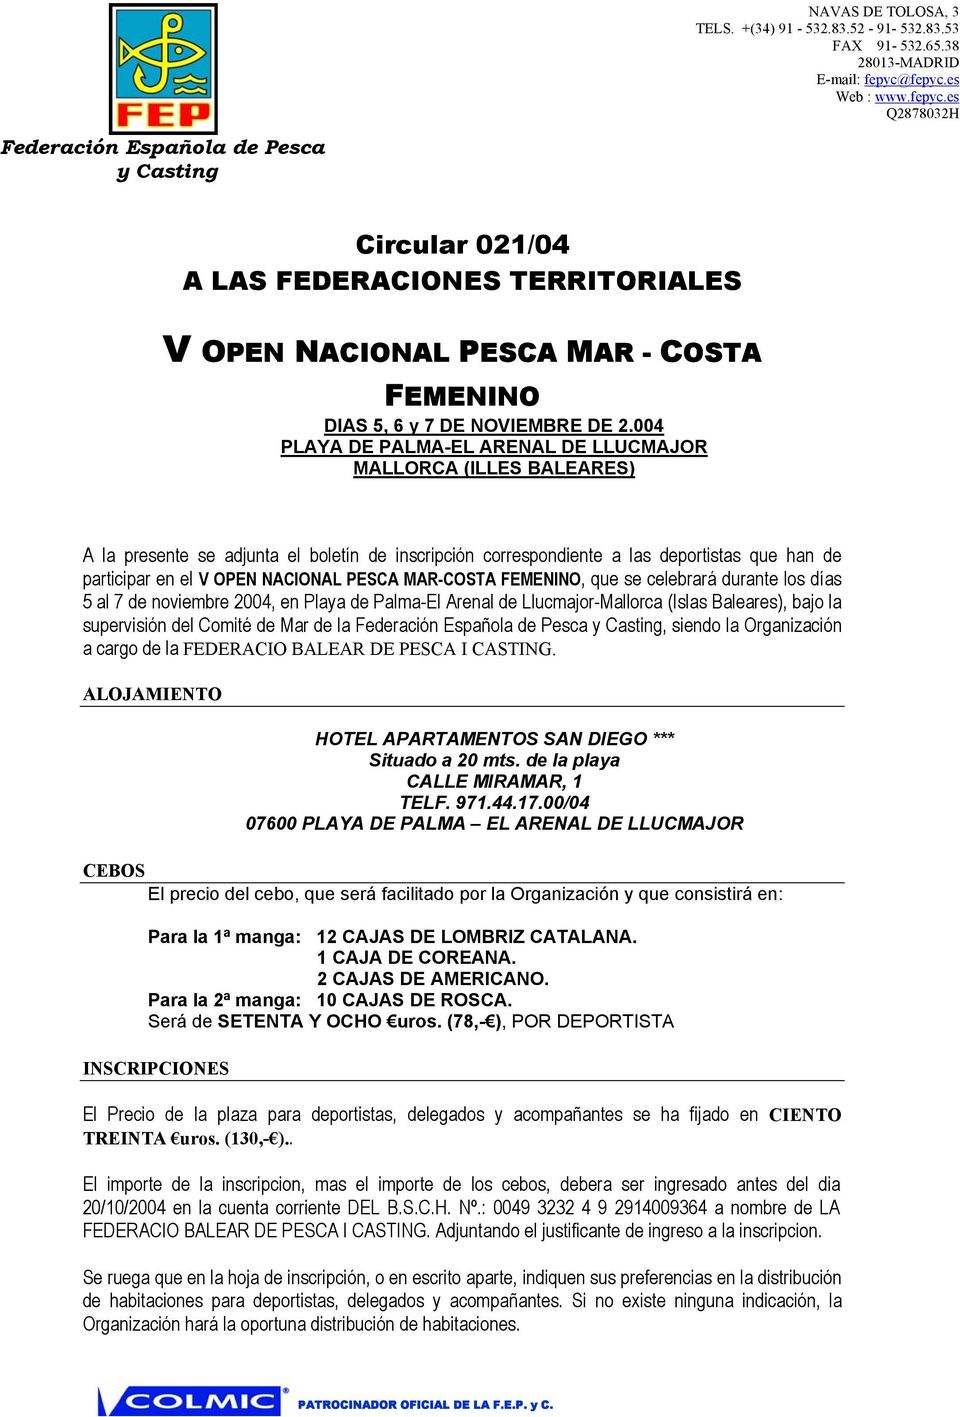 PESCA MAR-COSTA FEMENINO, que se celebrará durante los días 5 al 7 de noviembre 2004, en Playa de Palma-El Arenal de Llucmajor-Mallorca (Islas Baleares), bajo la supervisión del Comité de Mar de la,